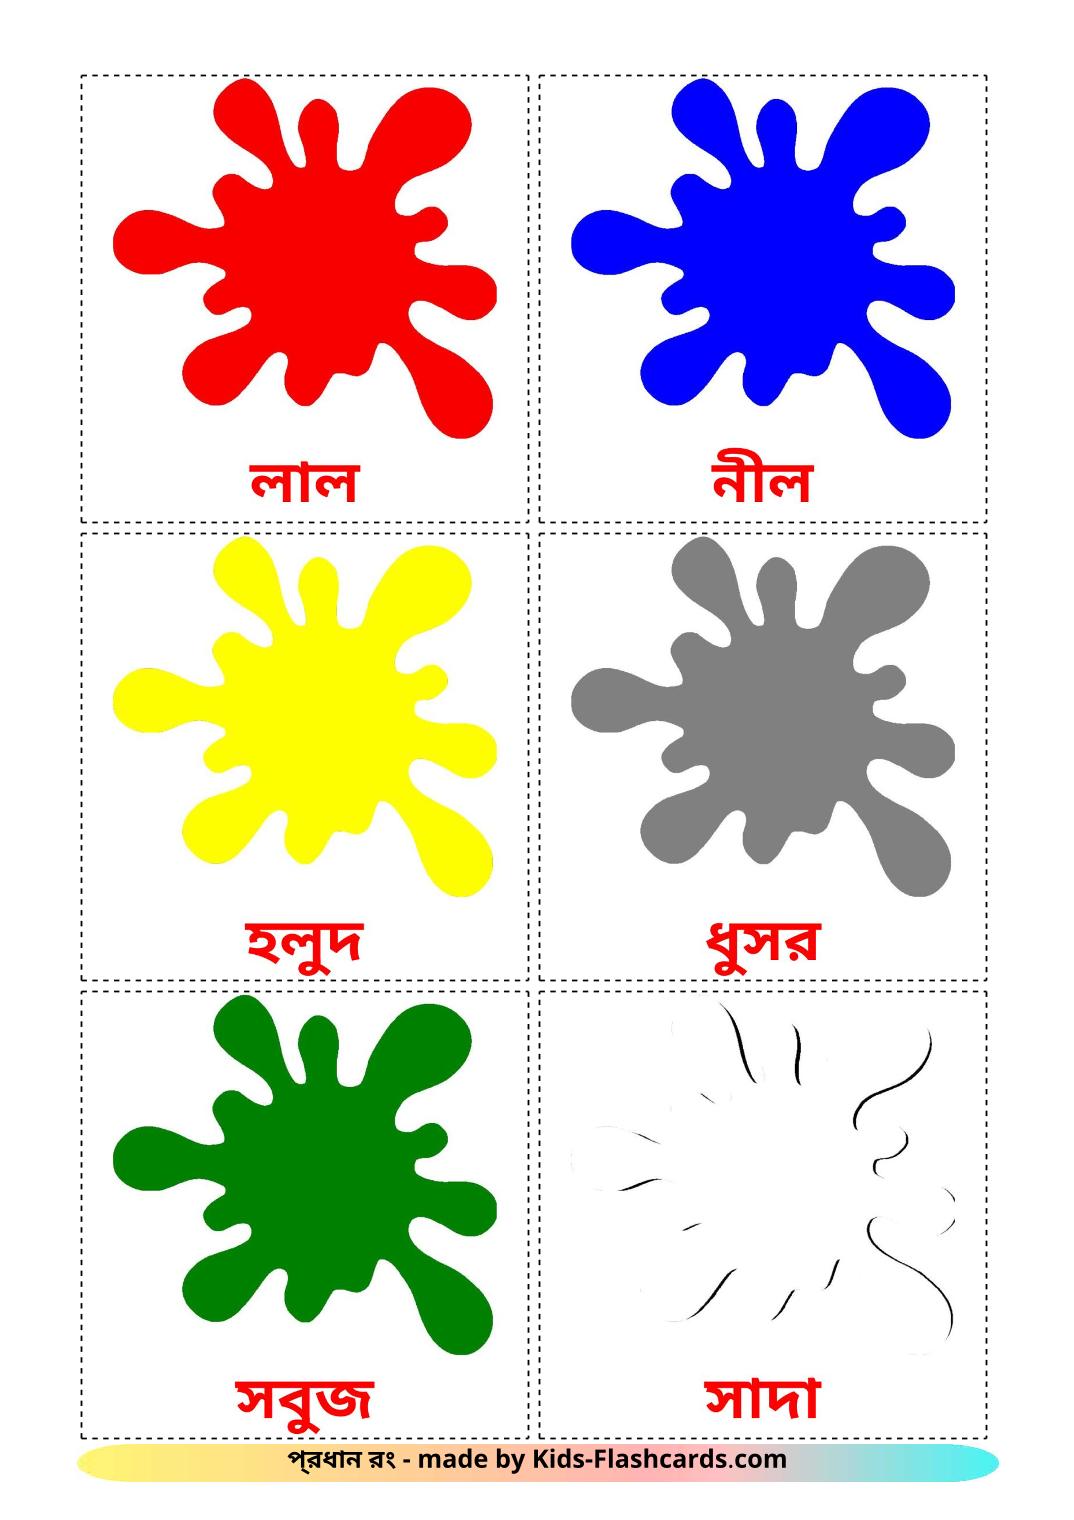 Couleurs de Base - 12 Flashcards bengali imprimables gratuitement